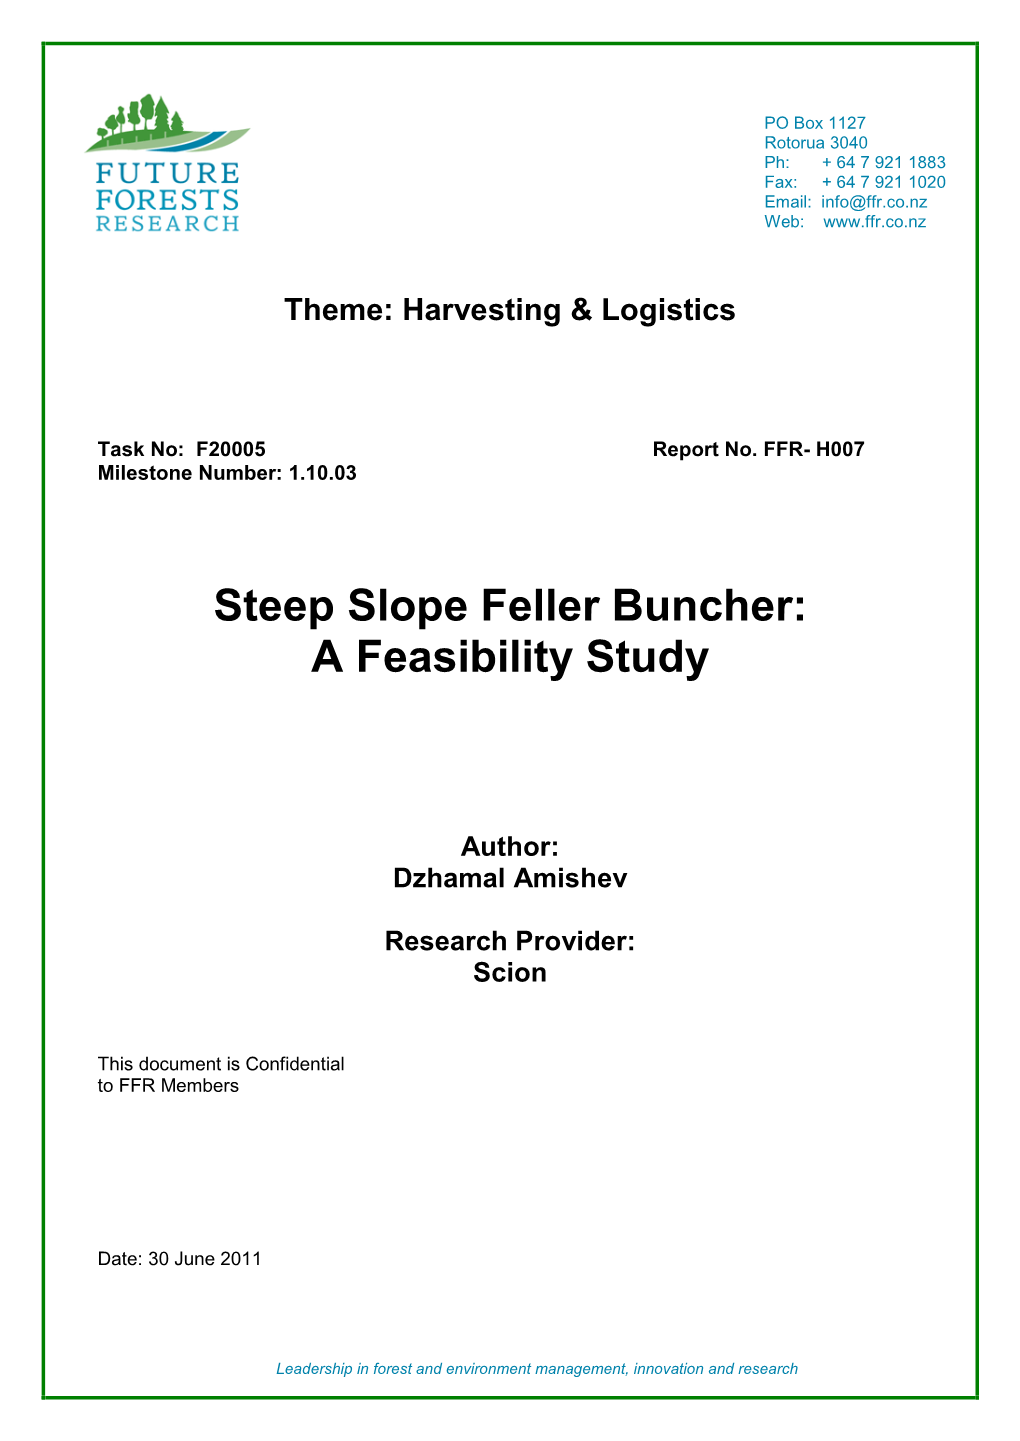 Steep Slope Feller Buncher: a Feasibility Study